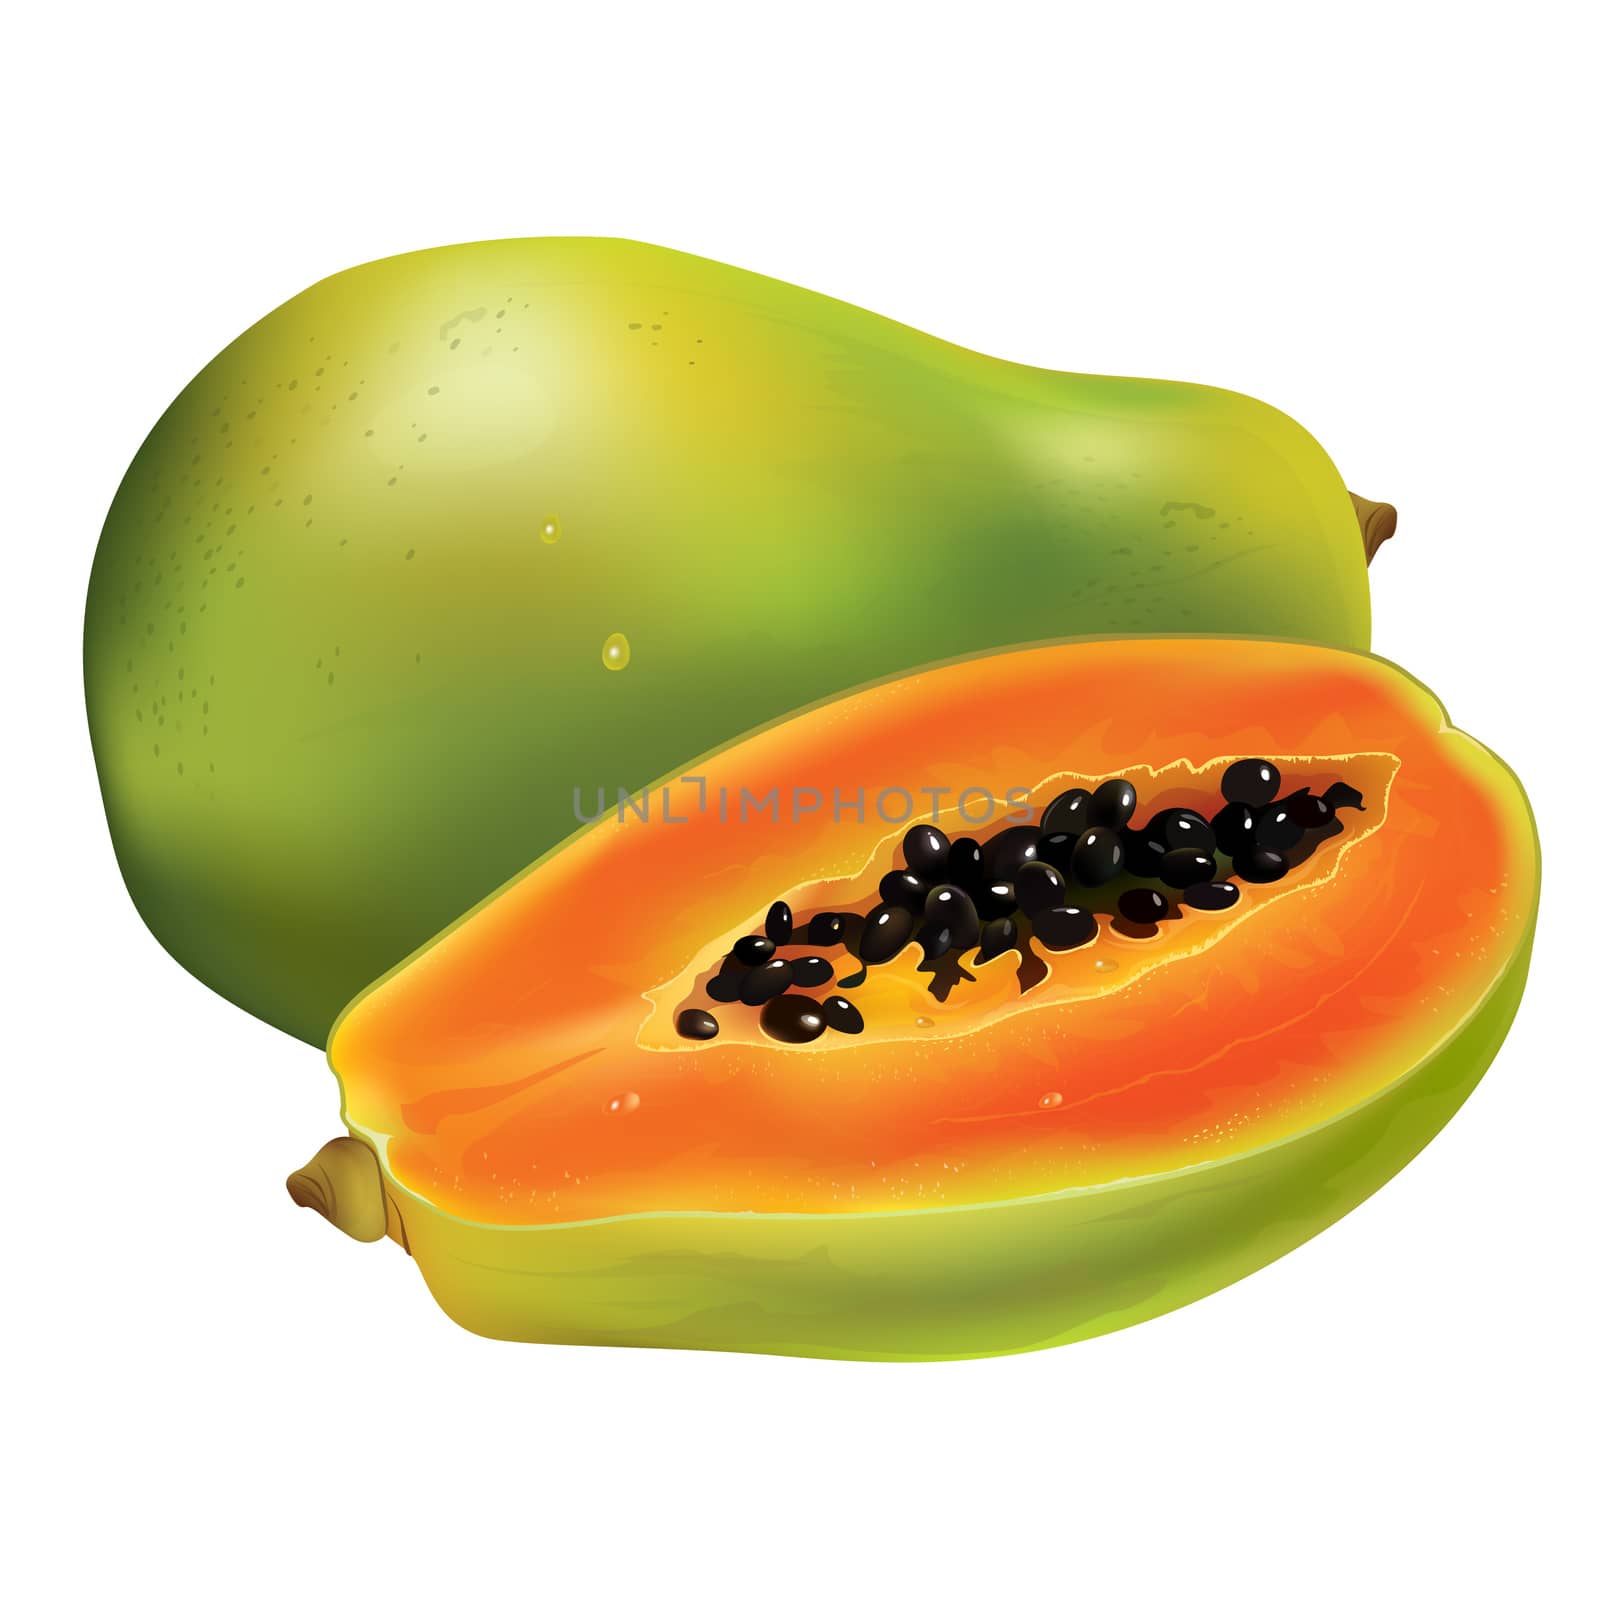 Papaya or pawpaw. Isolated illustration on white background.